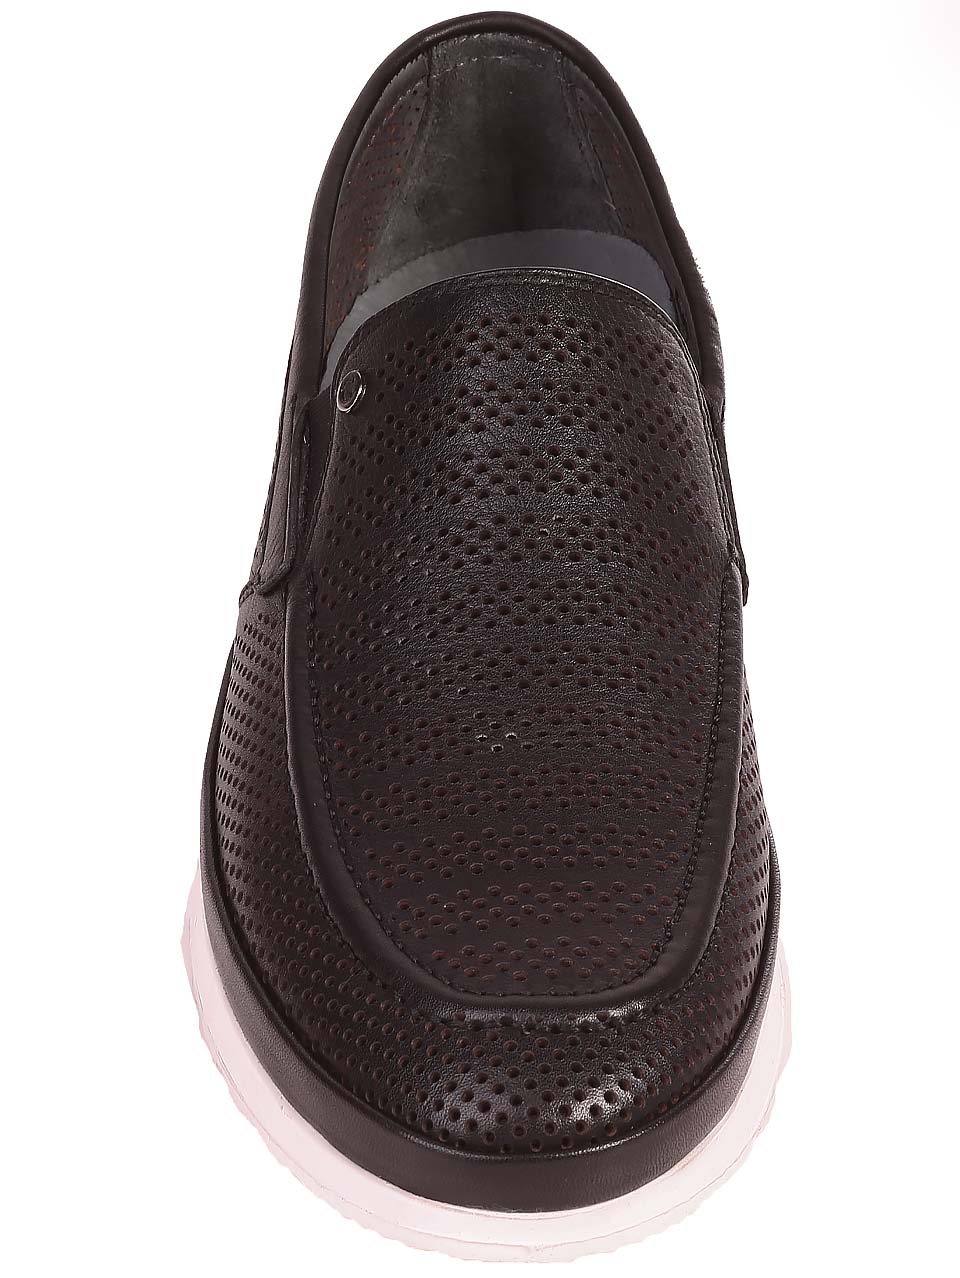 Ежедневни мъжки обувки от естествена кожа 7AT-24356 black